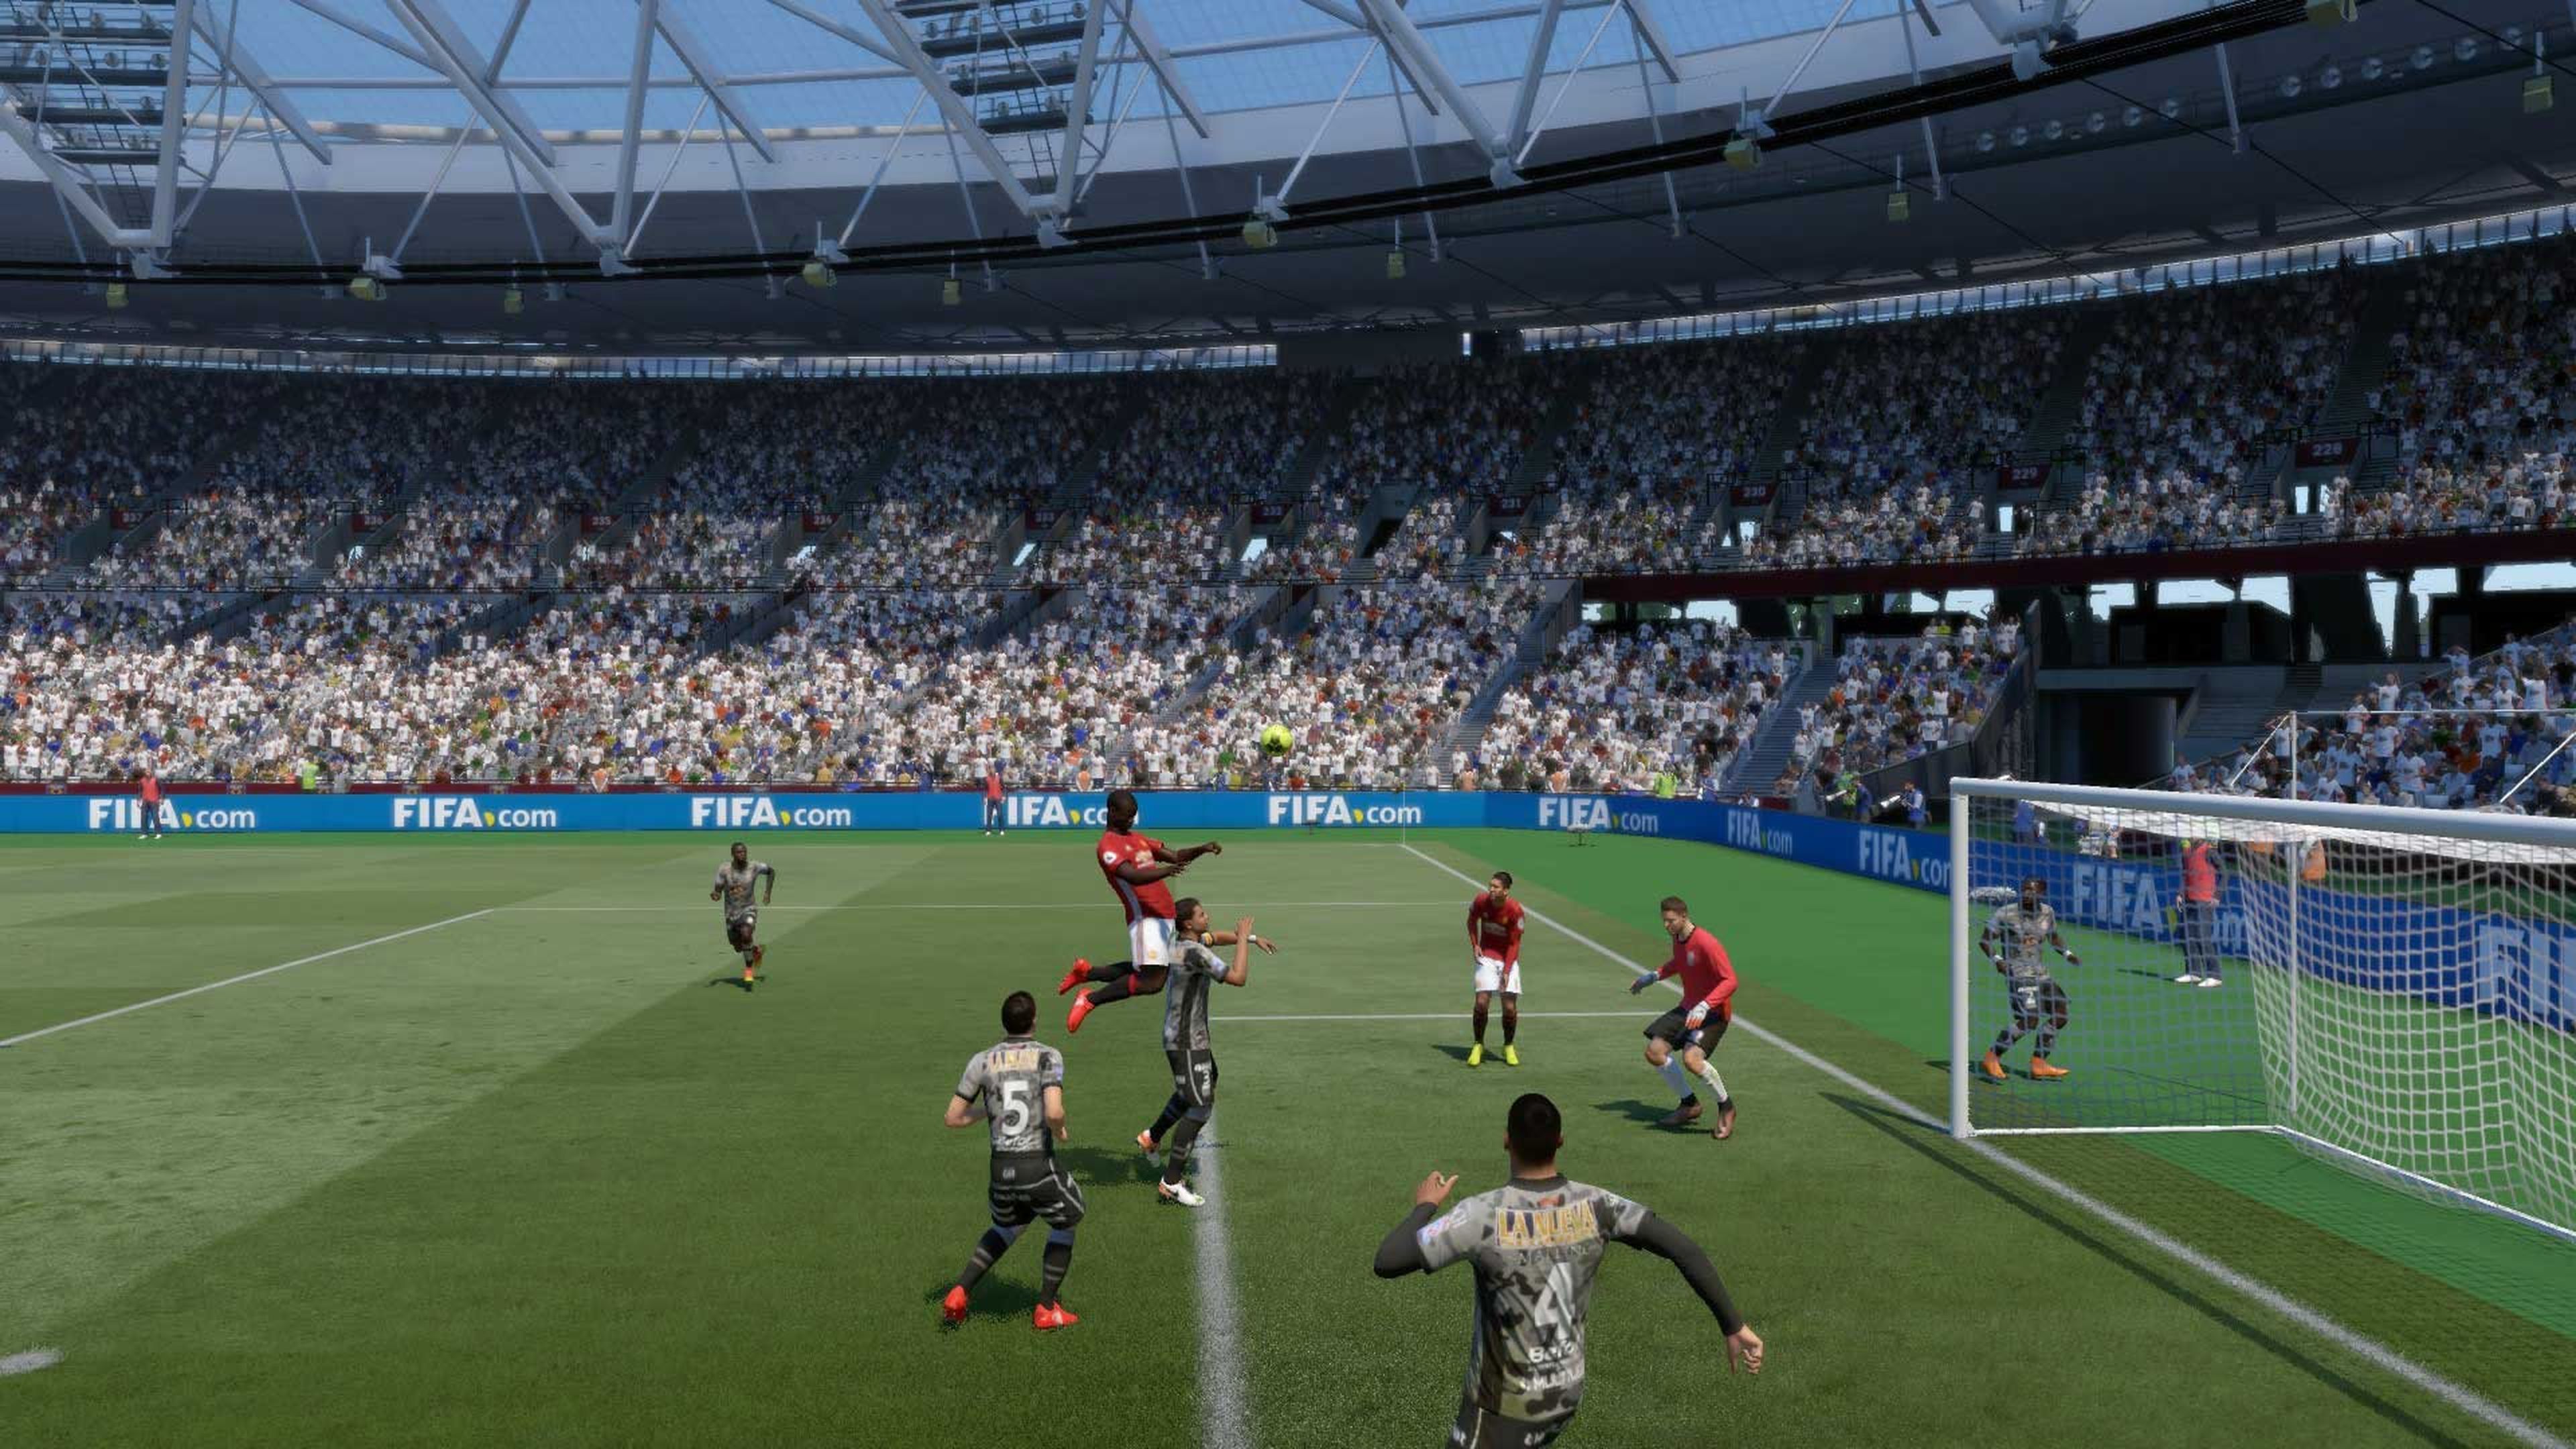 FIFA 18 córner